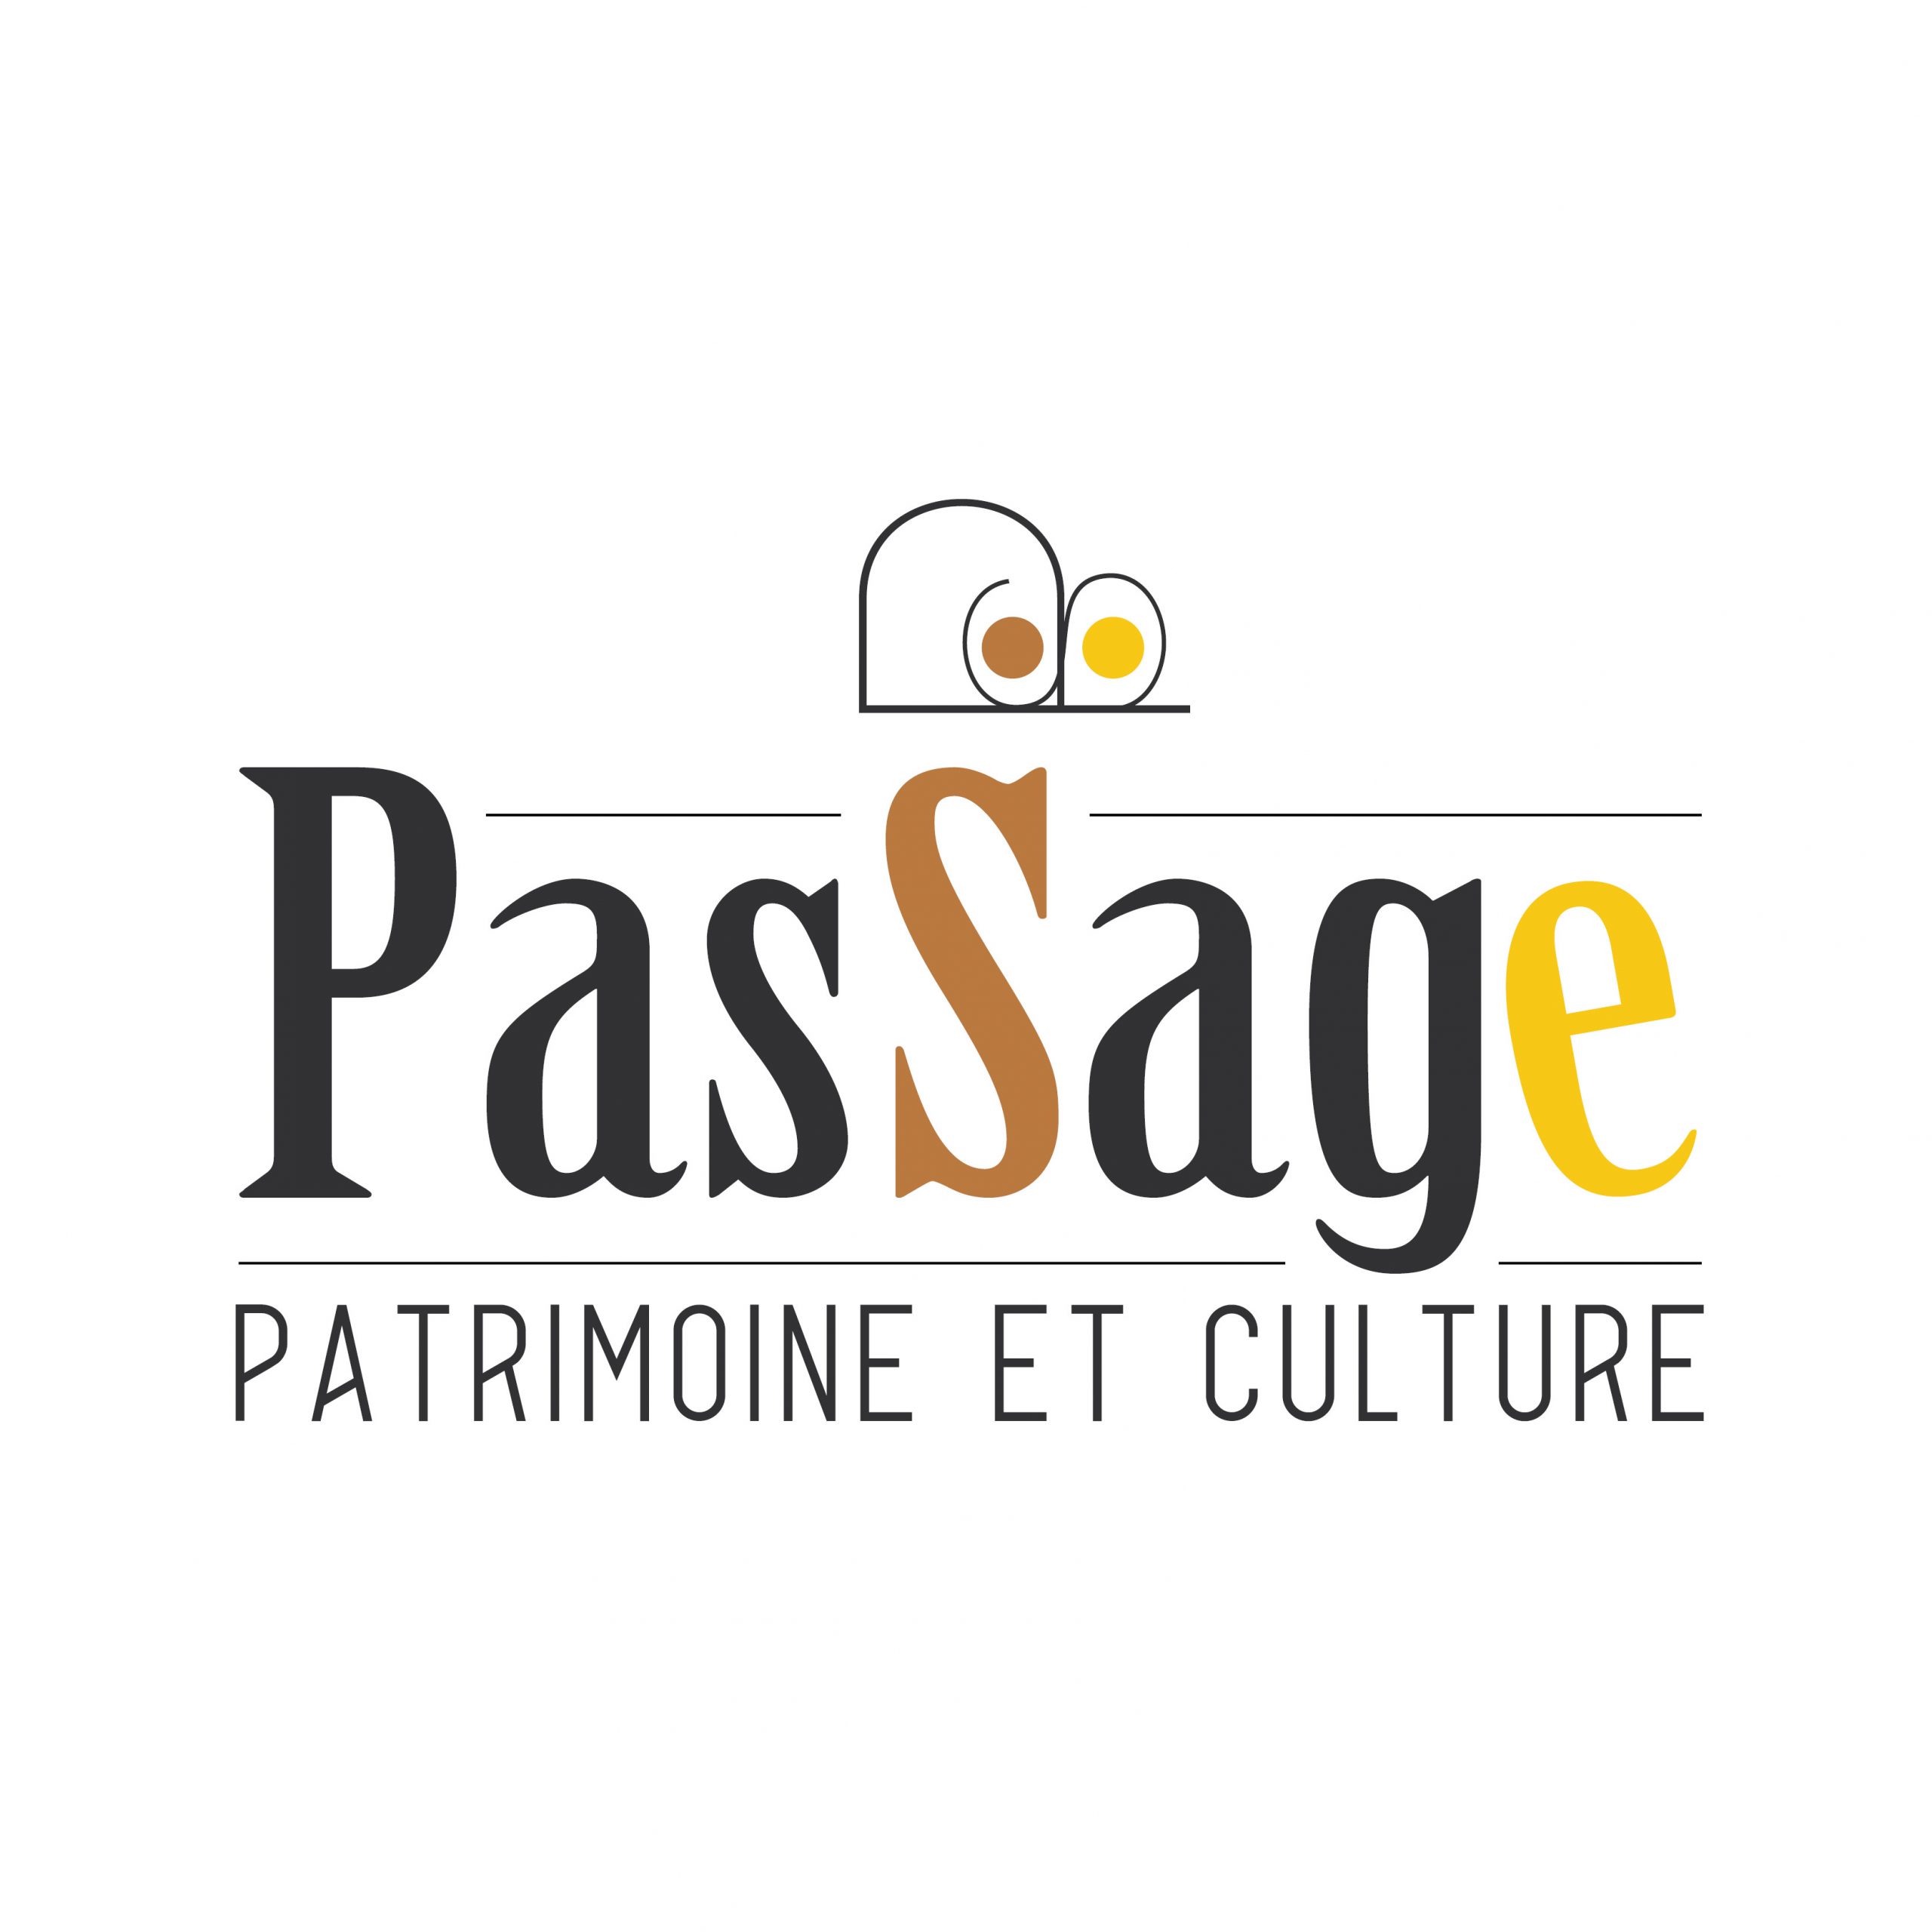 Passage - Patrimoine et Culture